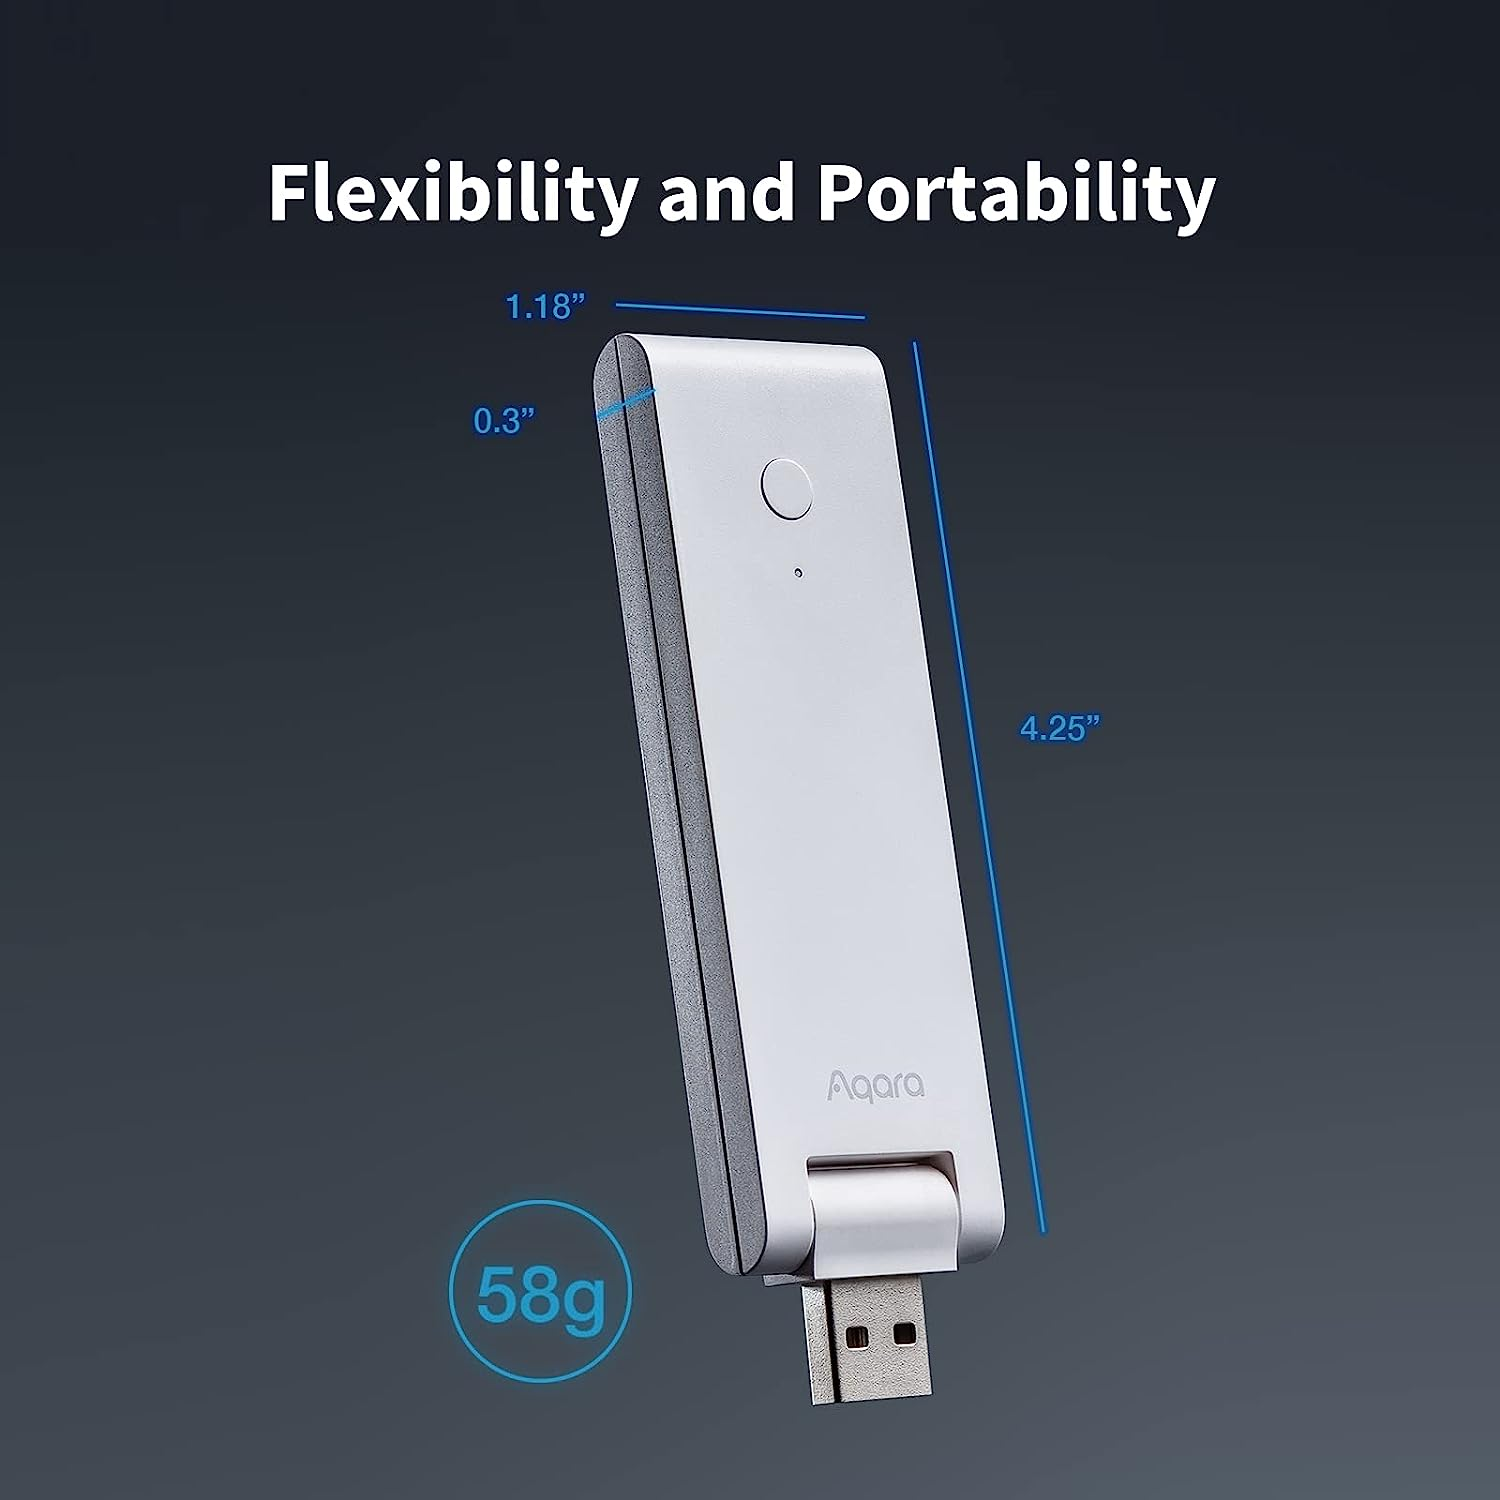 Aqara Smart Hub E1 Alimentado por USB-A, Zigbee 3.0, compatible con HomeKit, Alexa, Google Assistant, IFTTT